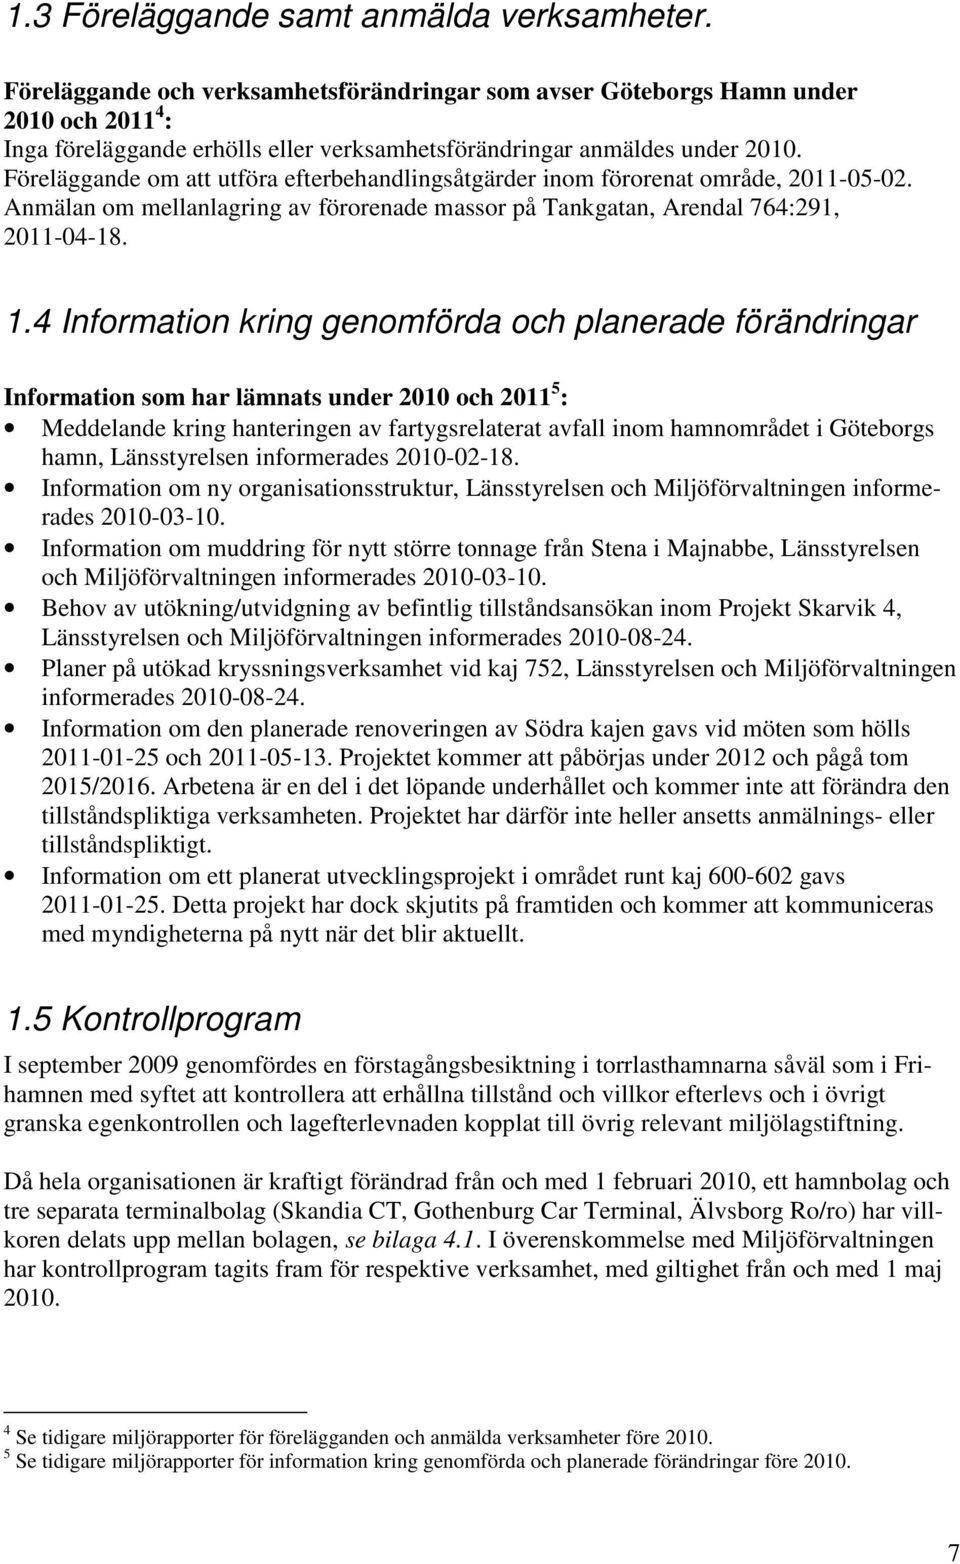 Föreläggande om att utföra efterbehandlingsåtgärder inom förorenat område, 2011-05-02. Anmälan om mellanlagring av förorenade massor på Tankgatan, Arendal 764:291, 2011-04-18. 1.